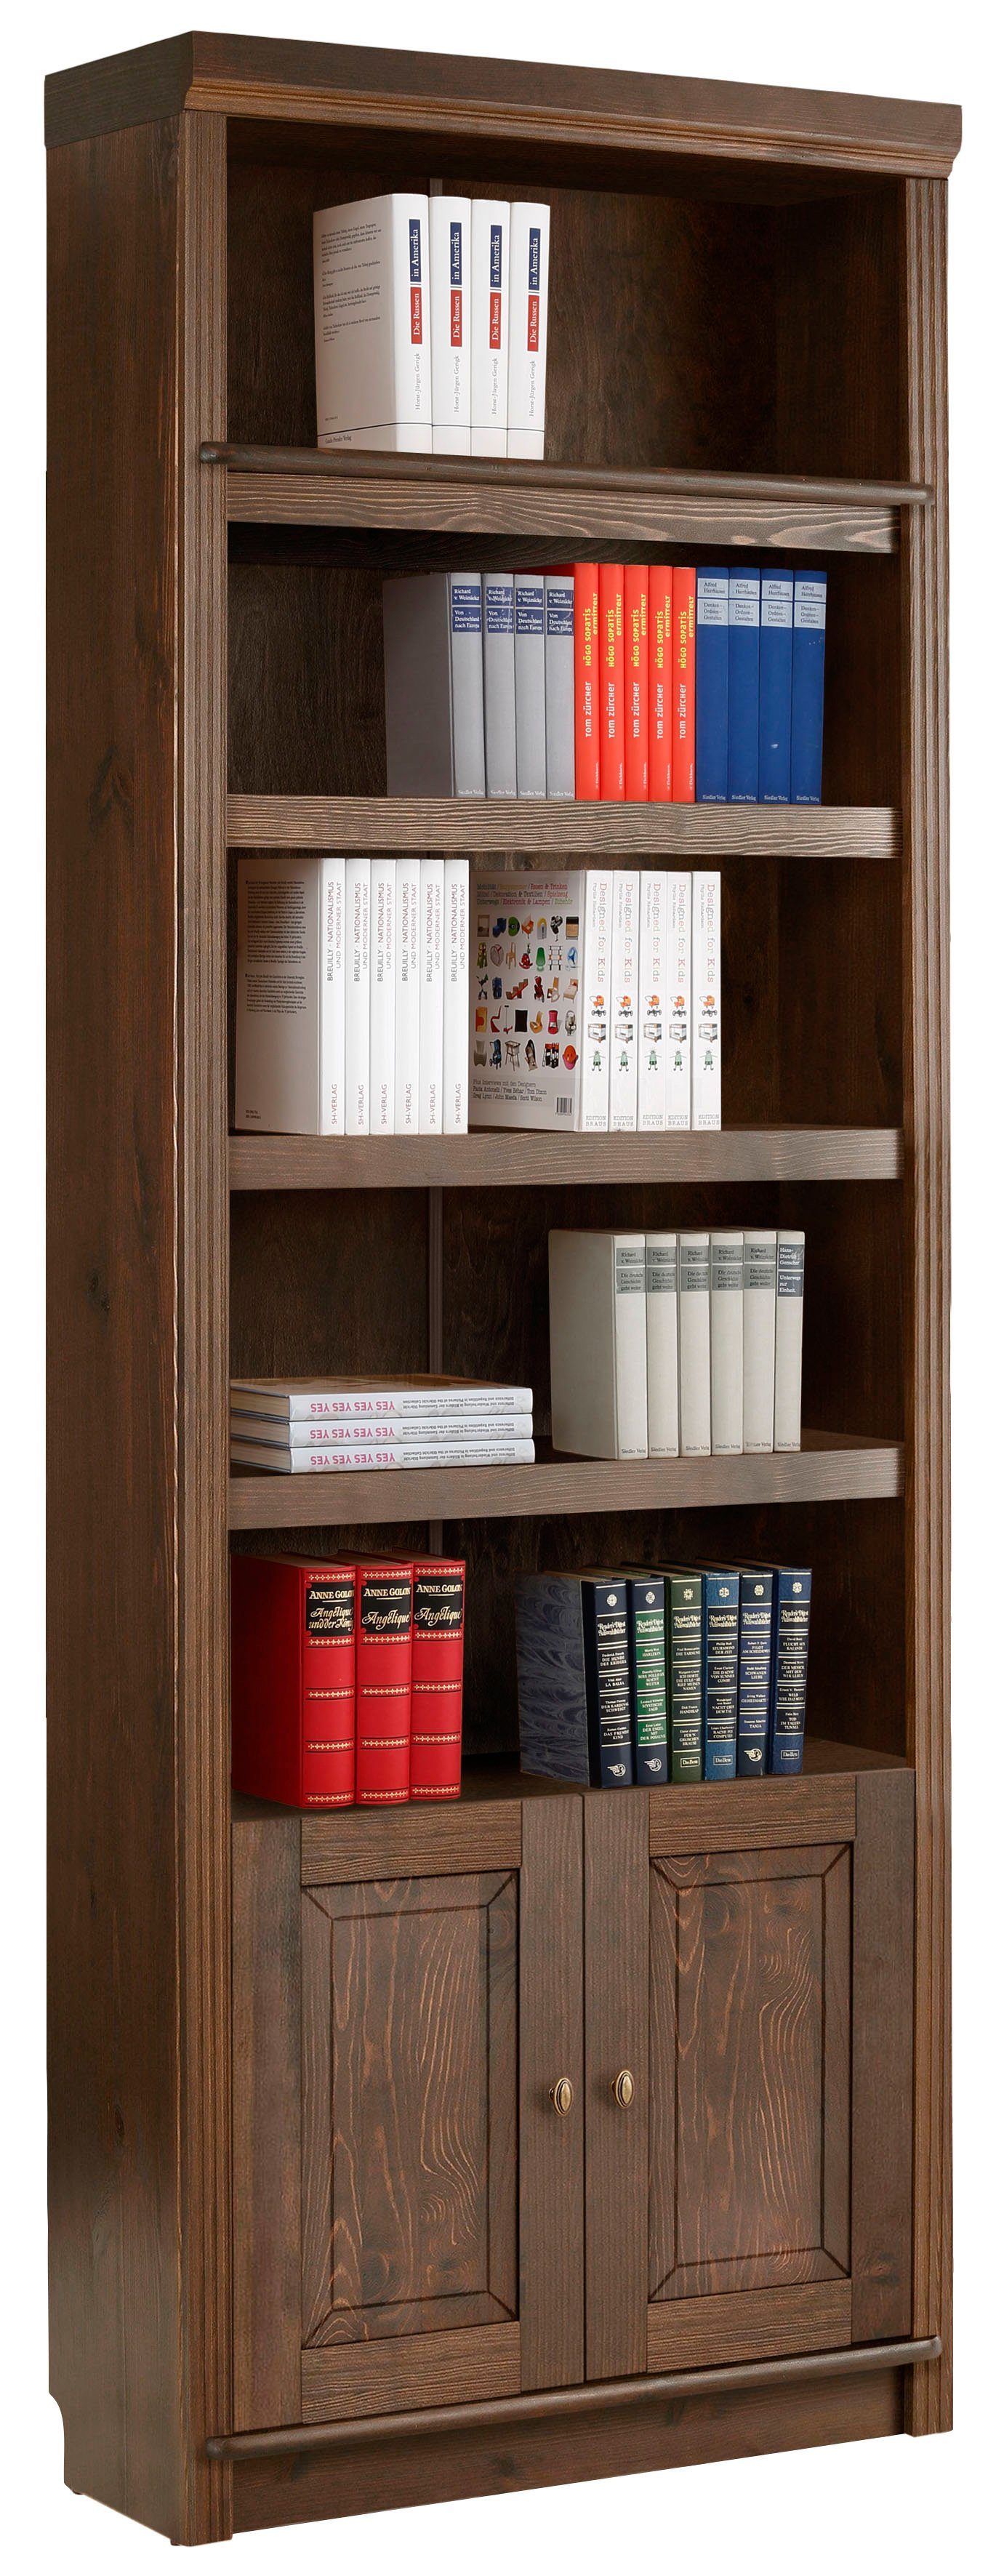 Home affaire Bücherregal Soeren, aus massiver Kiefer, Höhe 220 cm, mit 2 Holztüren, viel Stauraum dunkelbraun